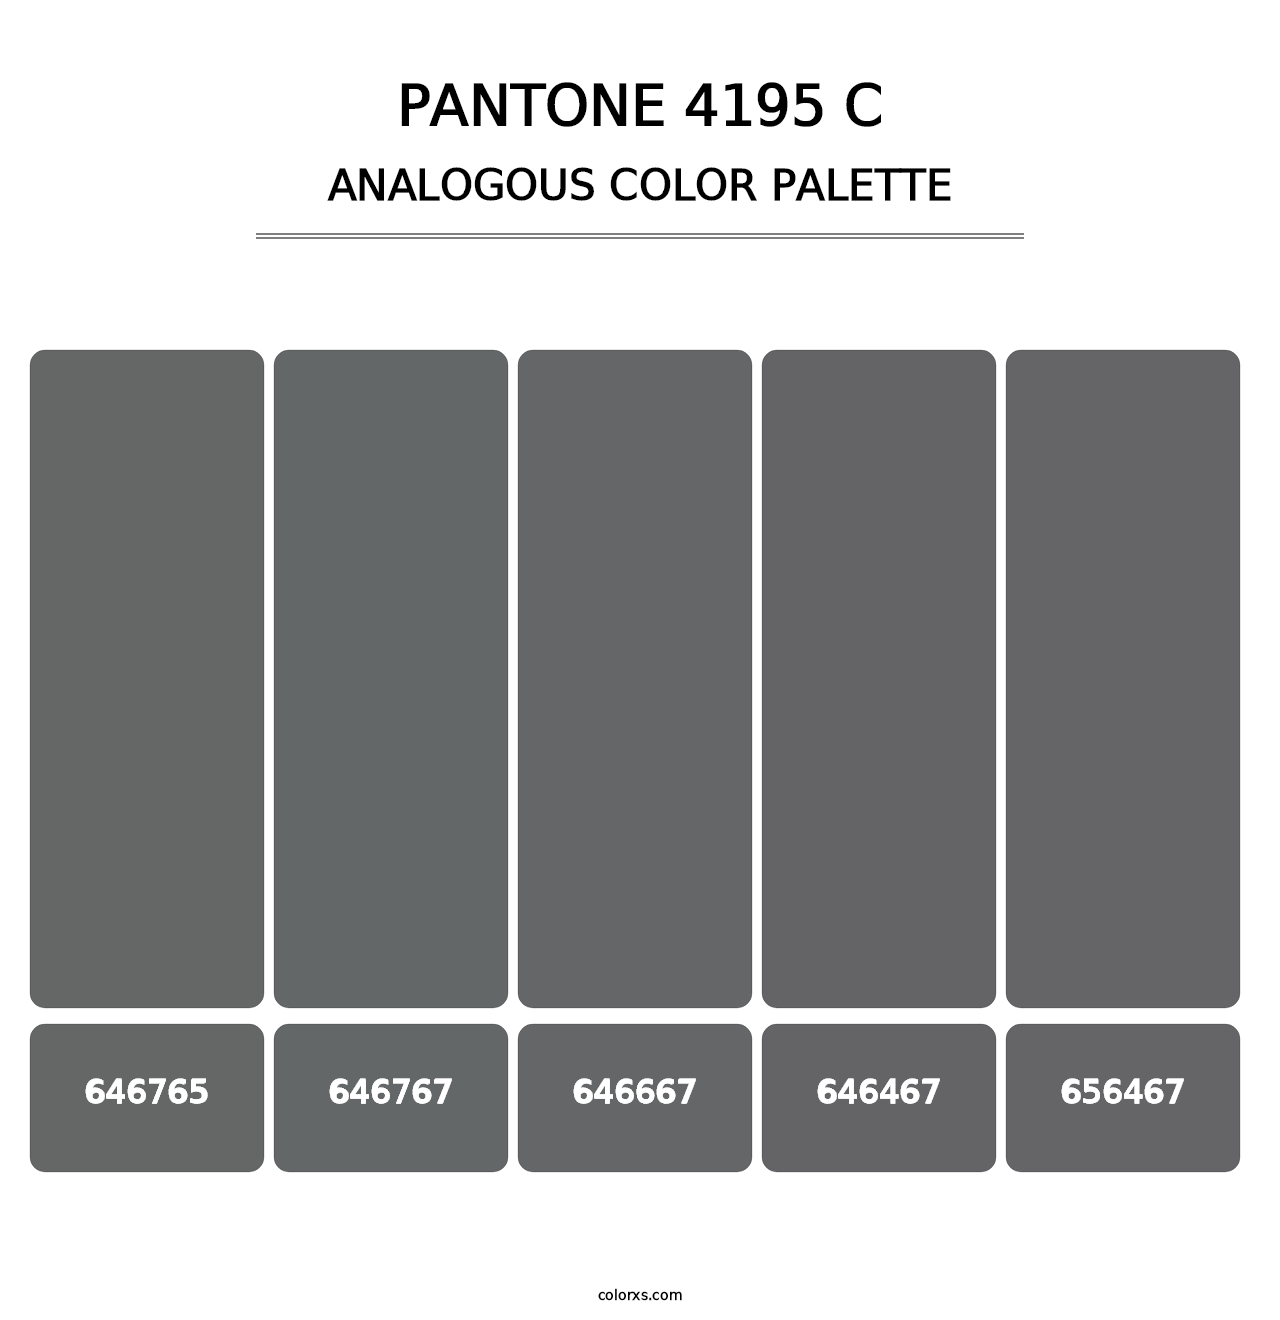 PANTONE 4195 C - Analogous Color Palette